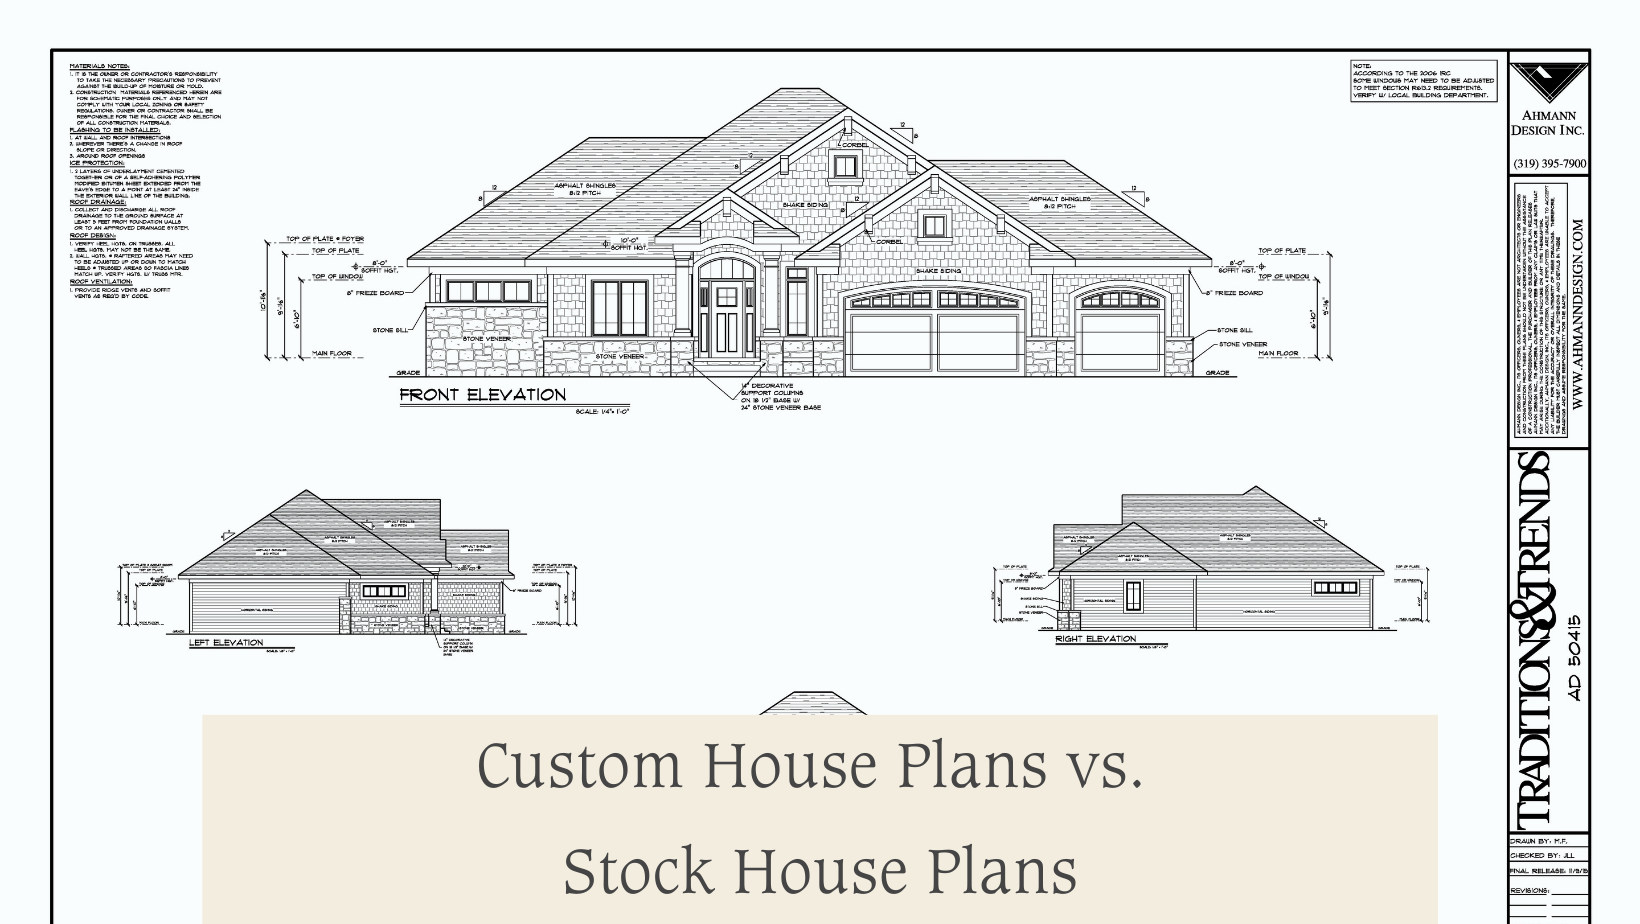 Custom House Plans vs. Stock House Plans